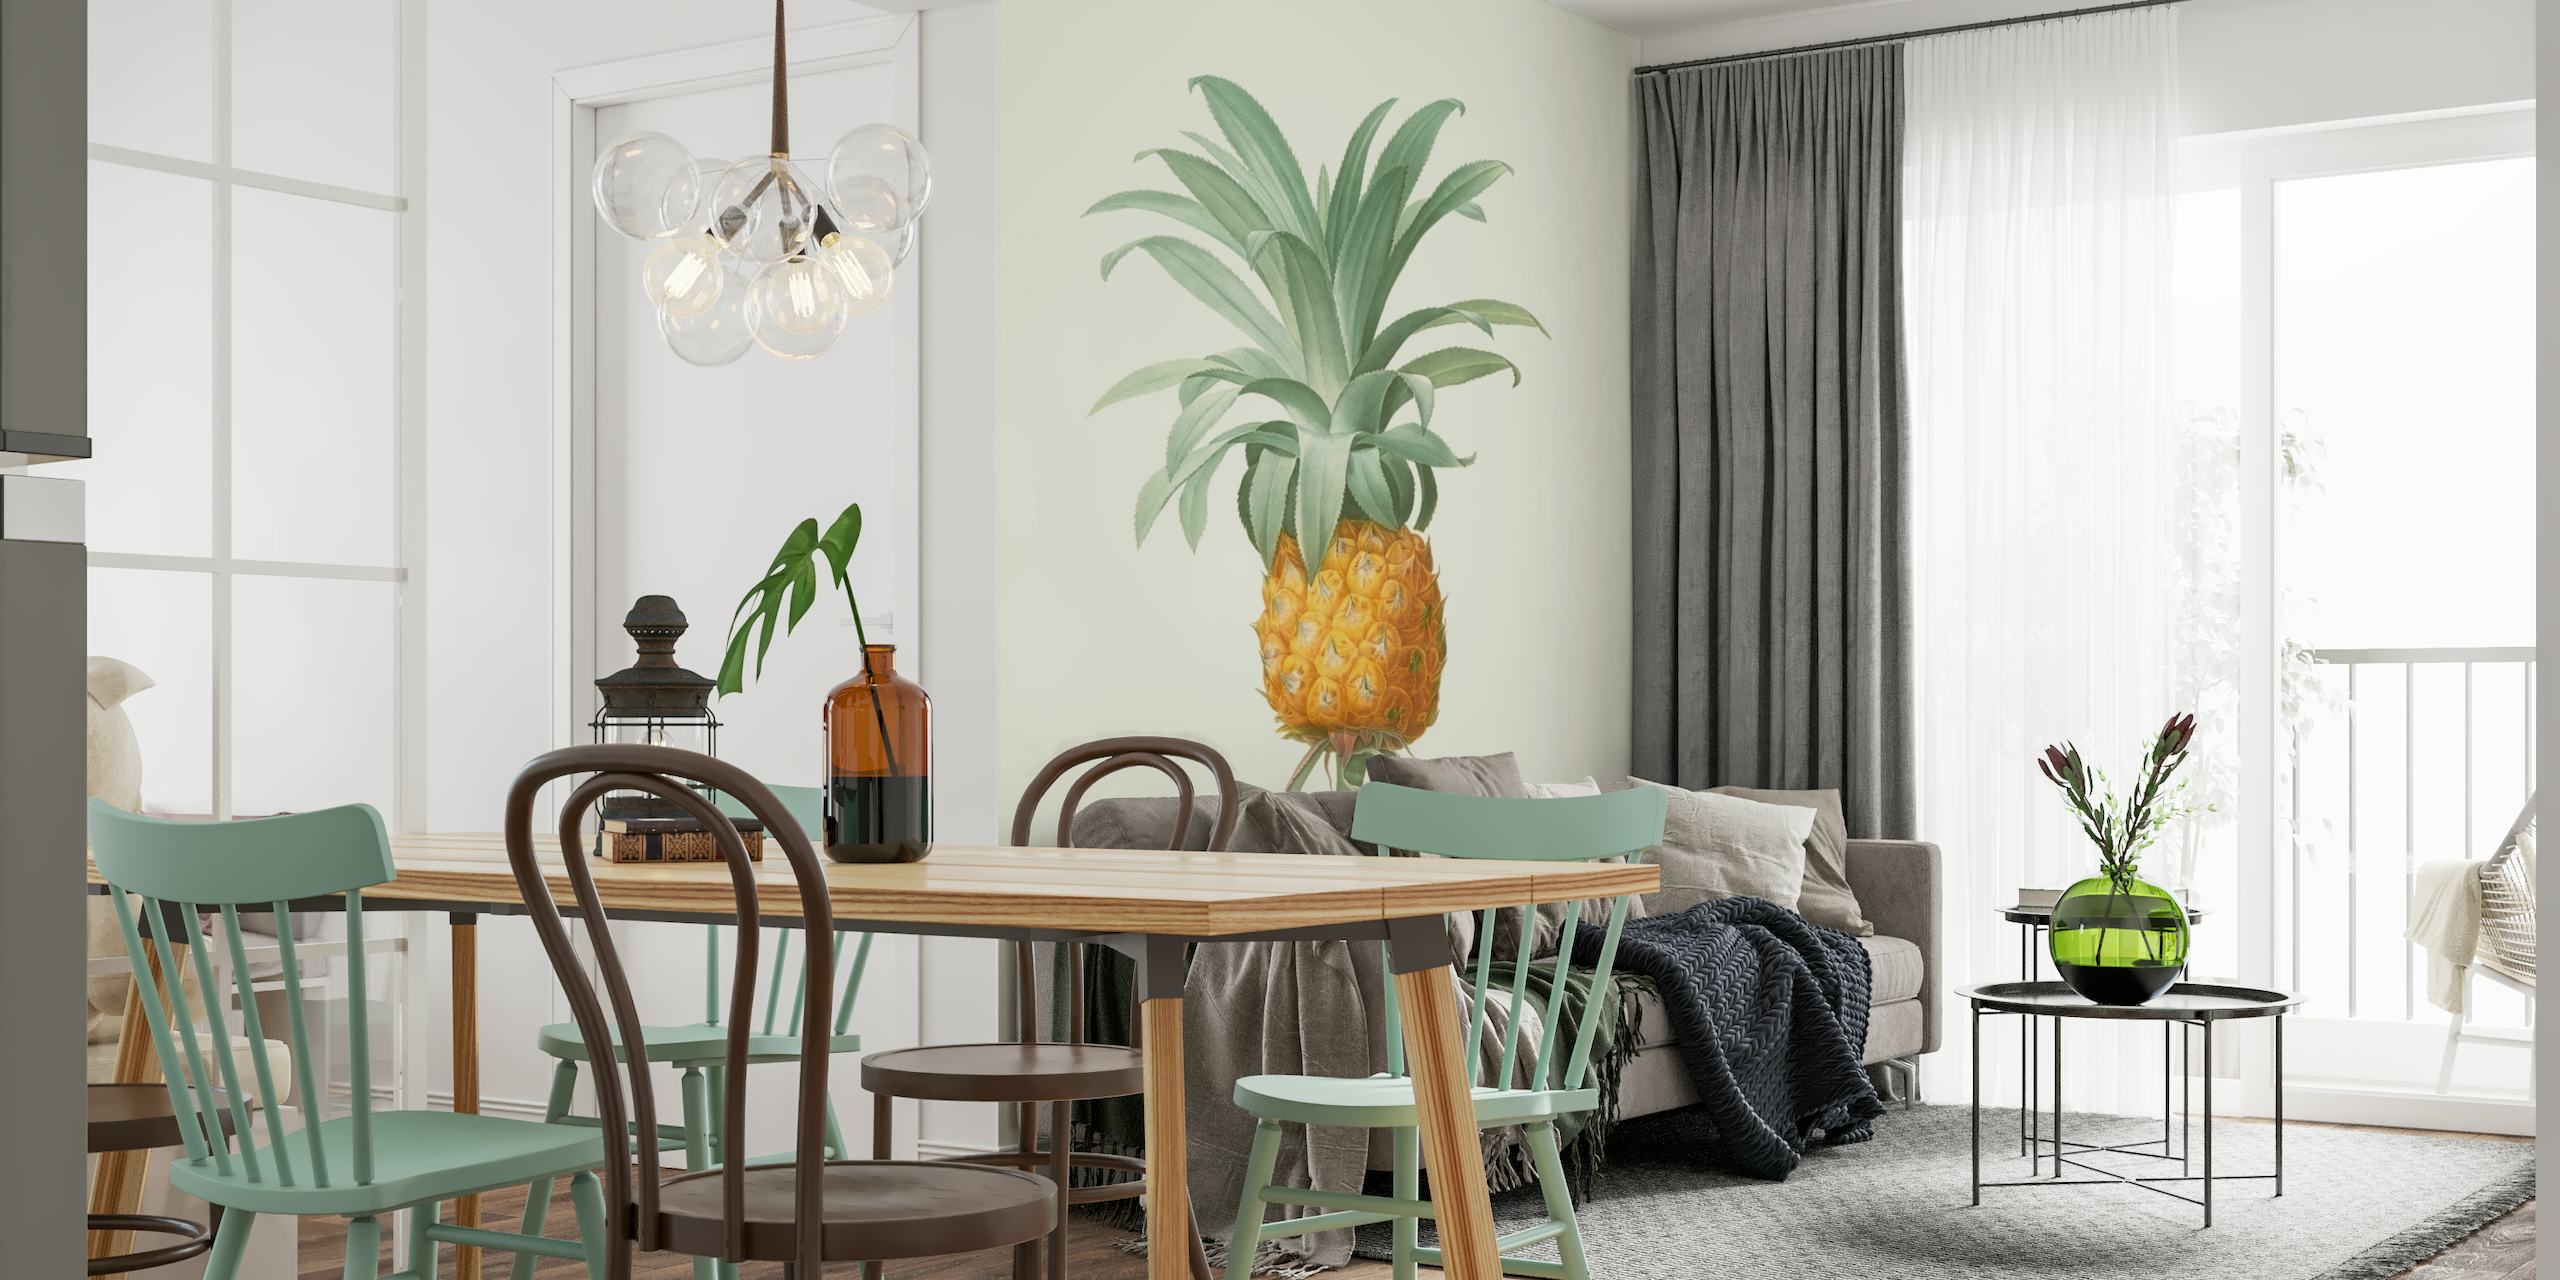 Pineapple 2 - Aster wallpaper